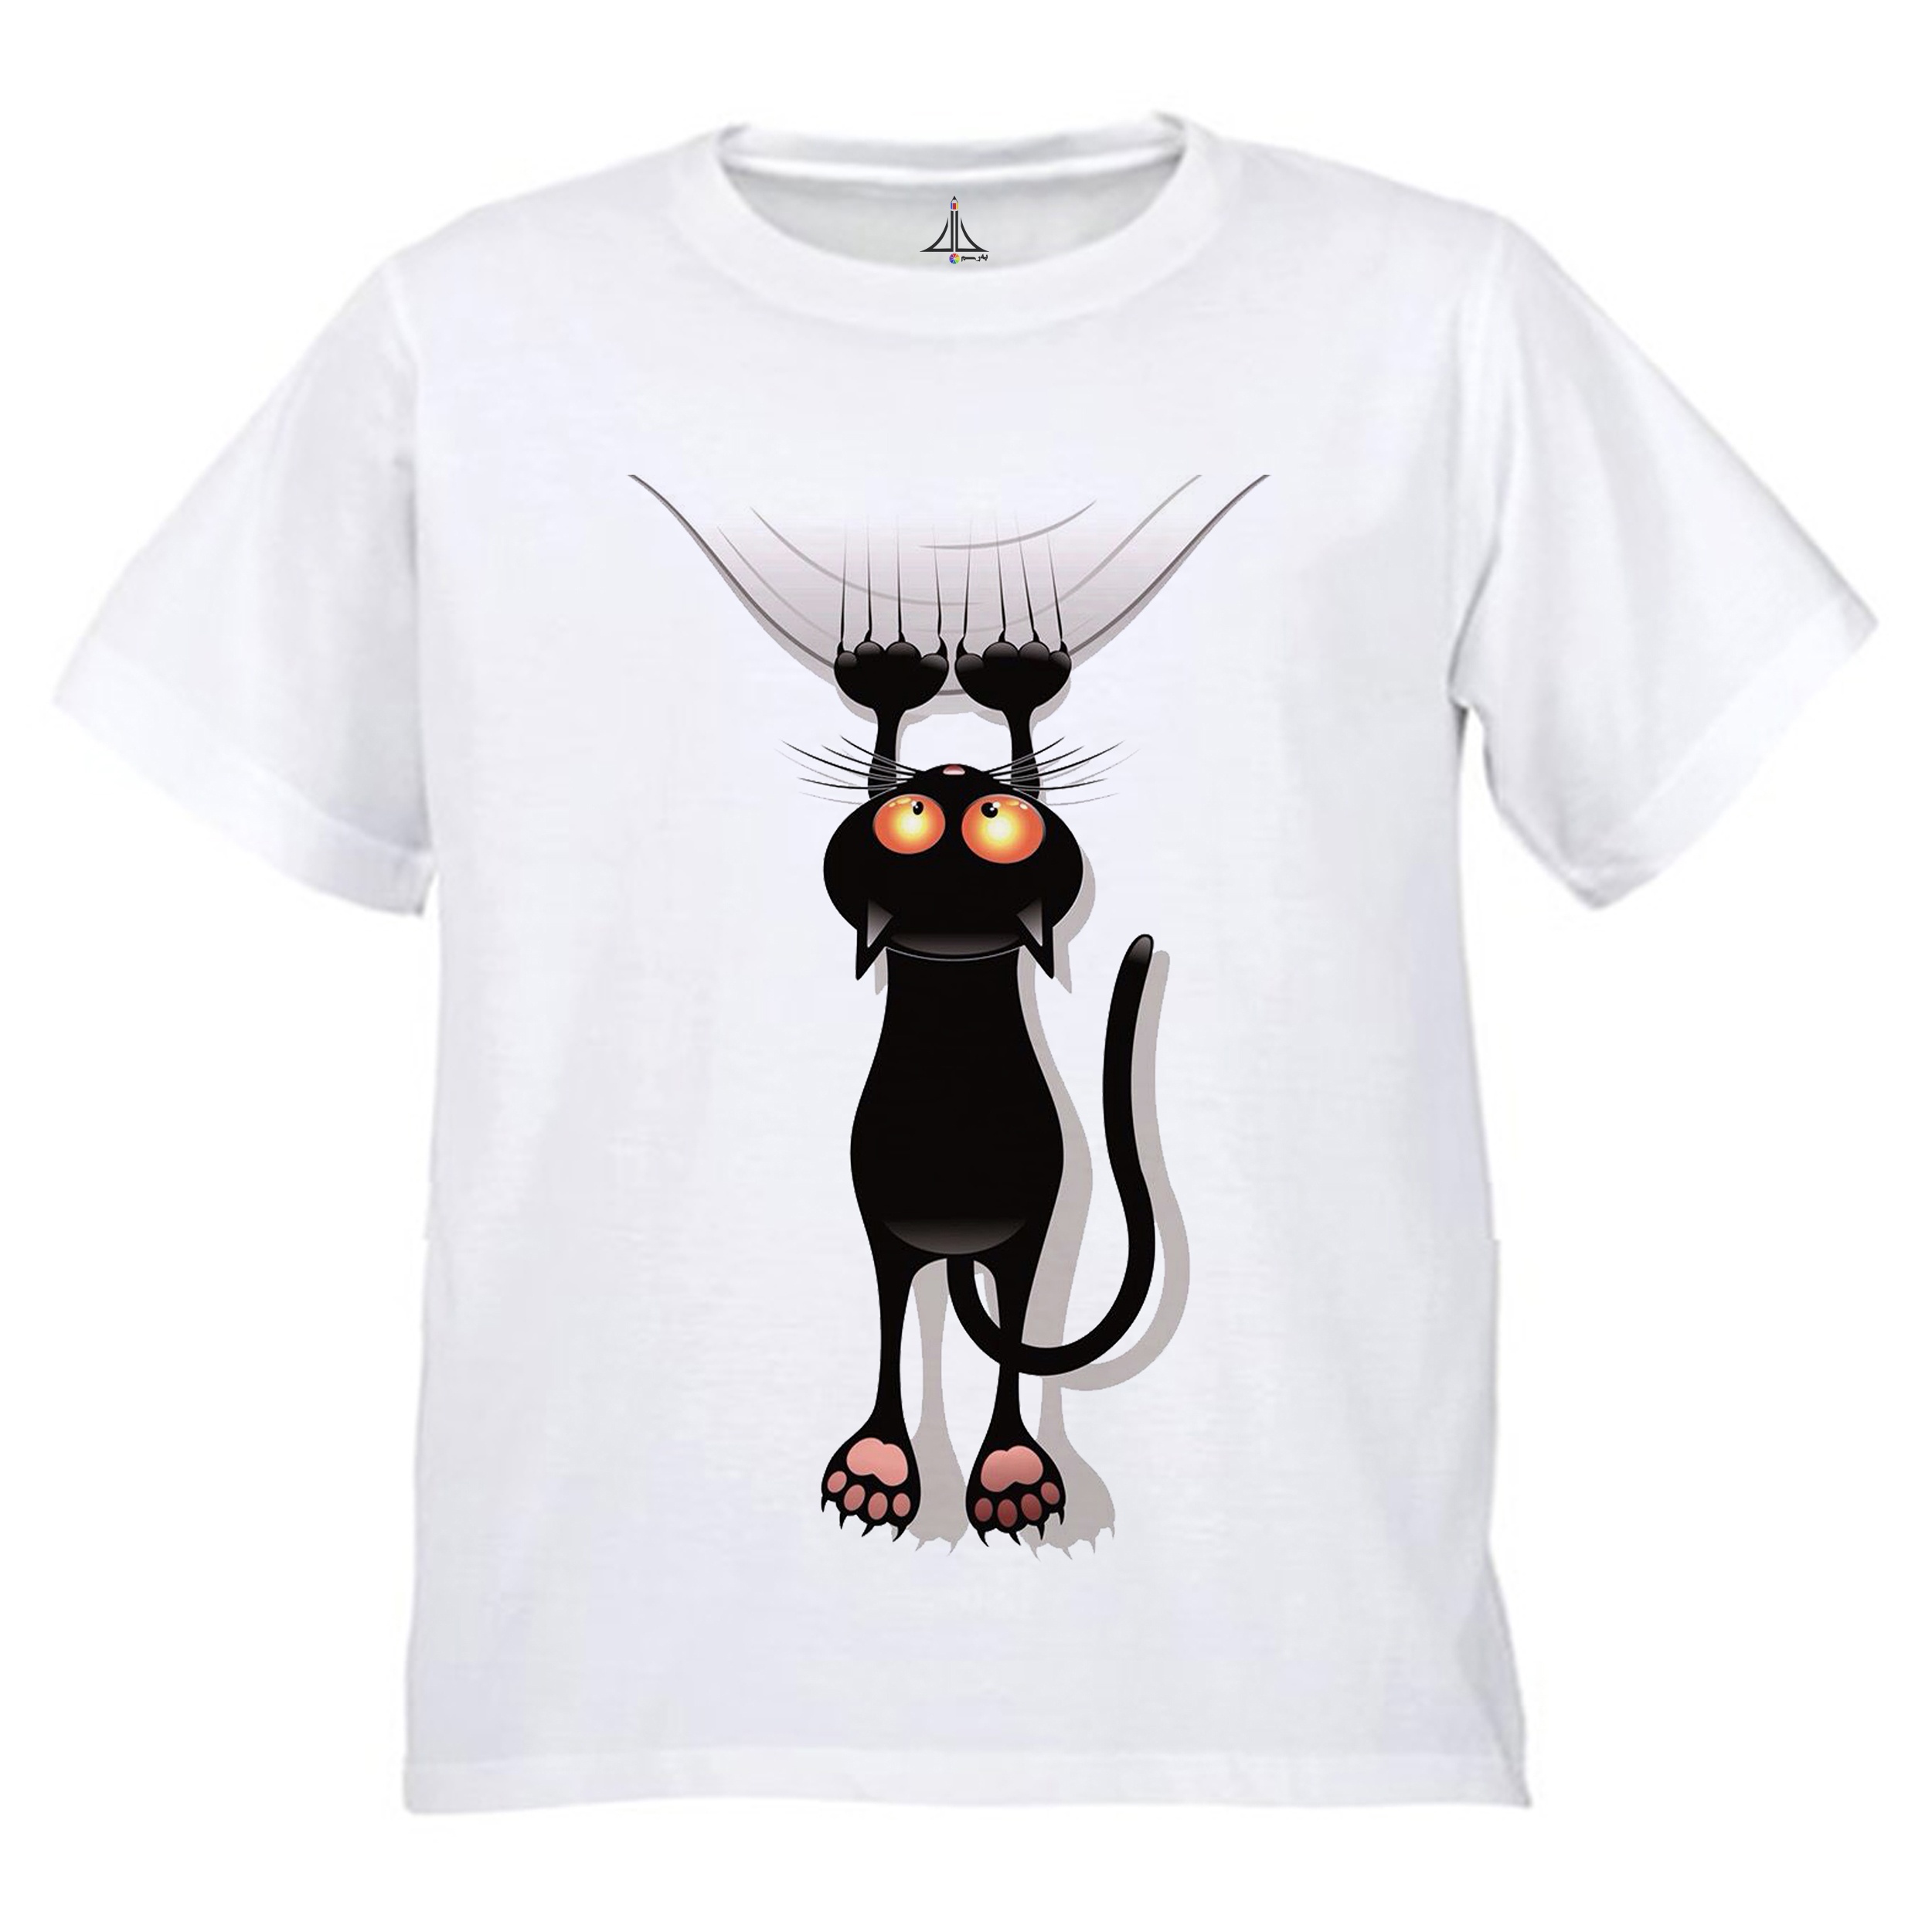 تی شرت دخترانه به رسم طرح گربه کد 9902